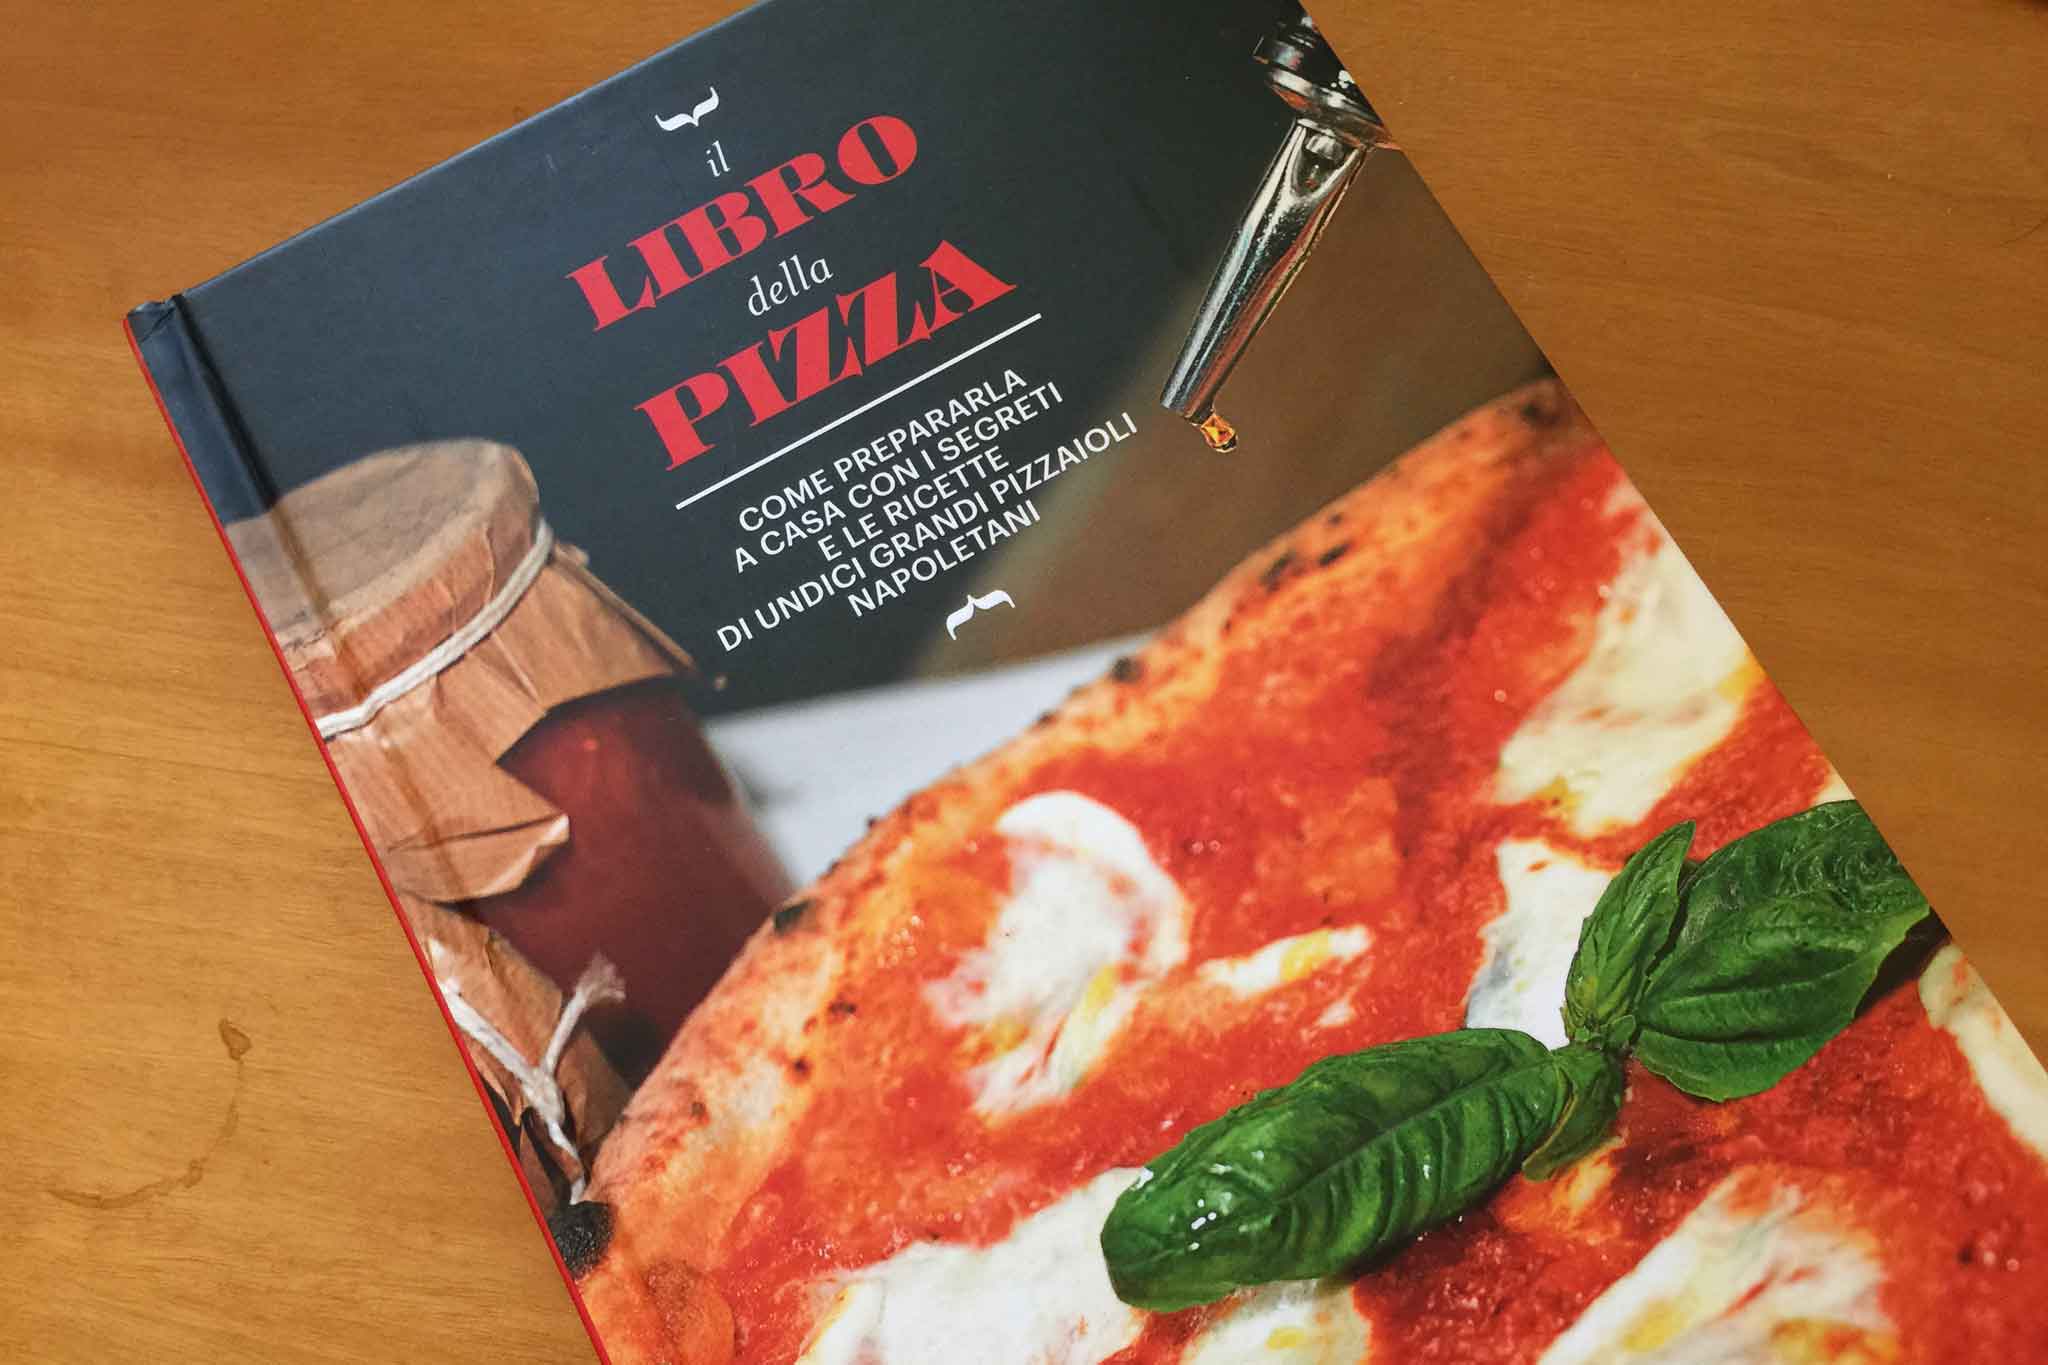 11 consigli dei pizzaioli per fare la pizza a casa spiegati in un libro